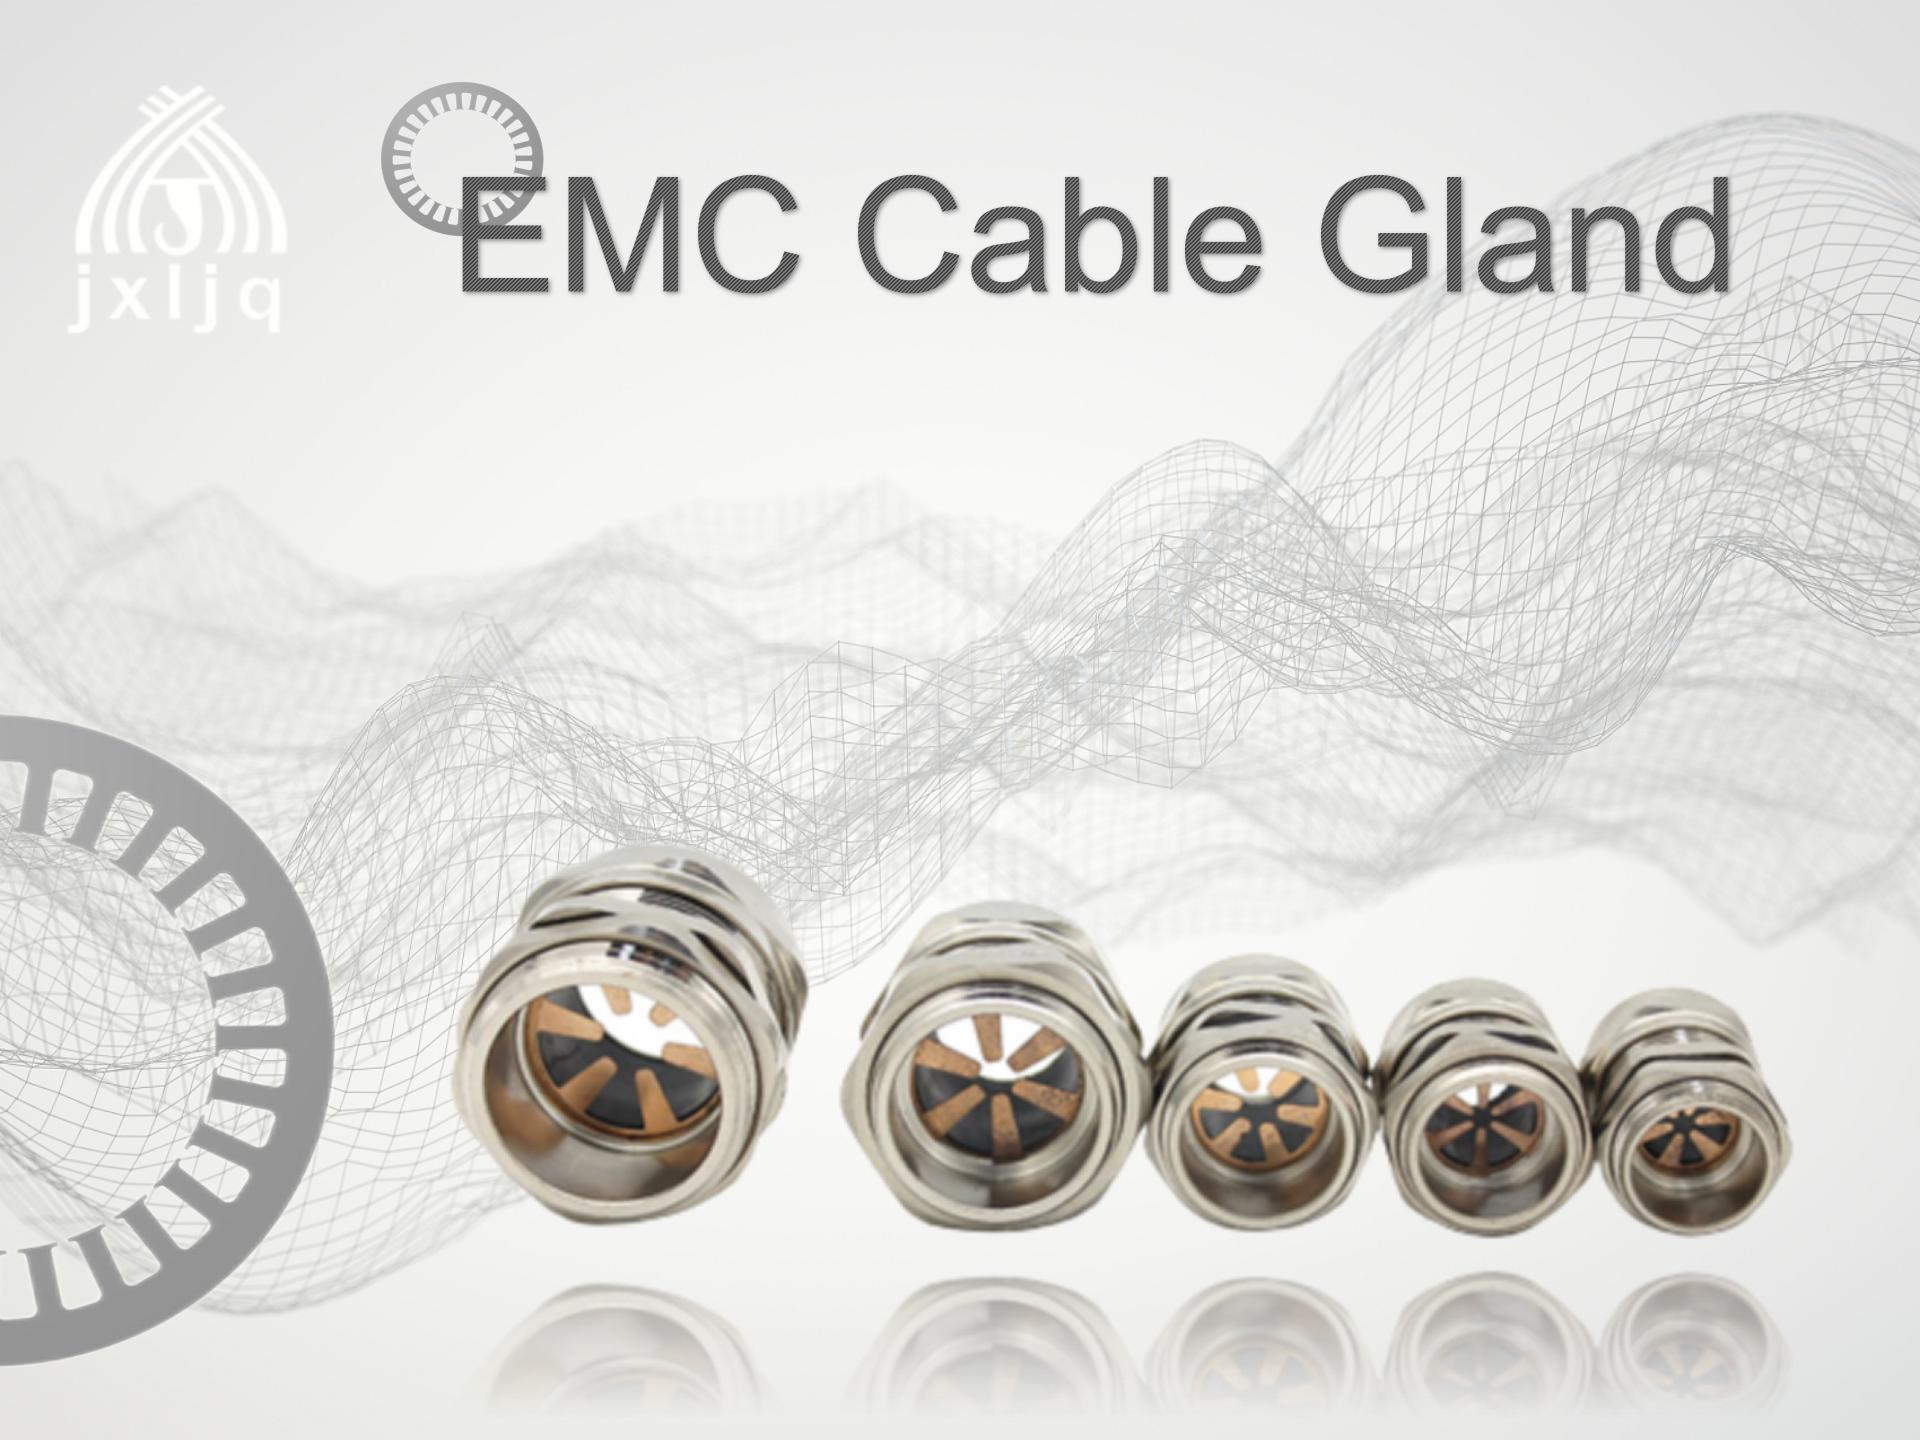 Што е жлезда за EMC кабел?